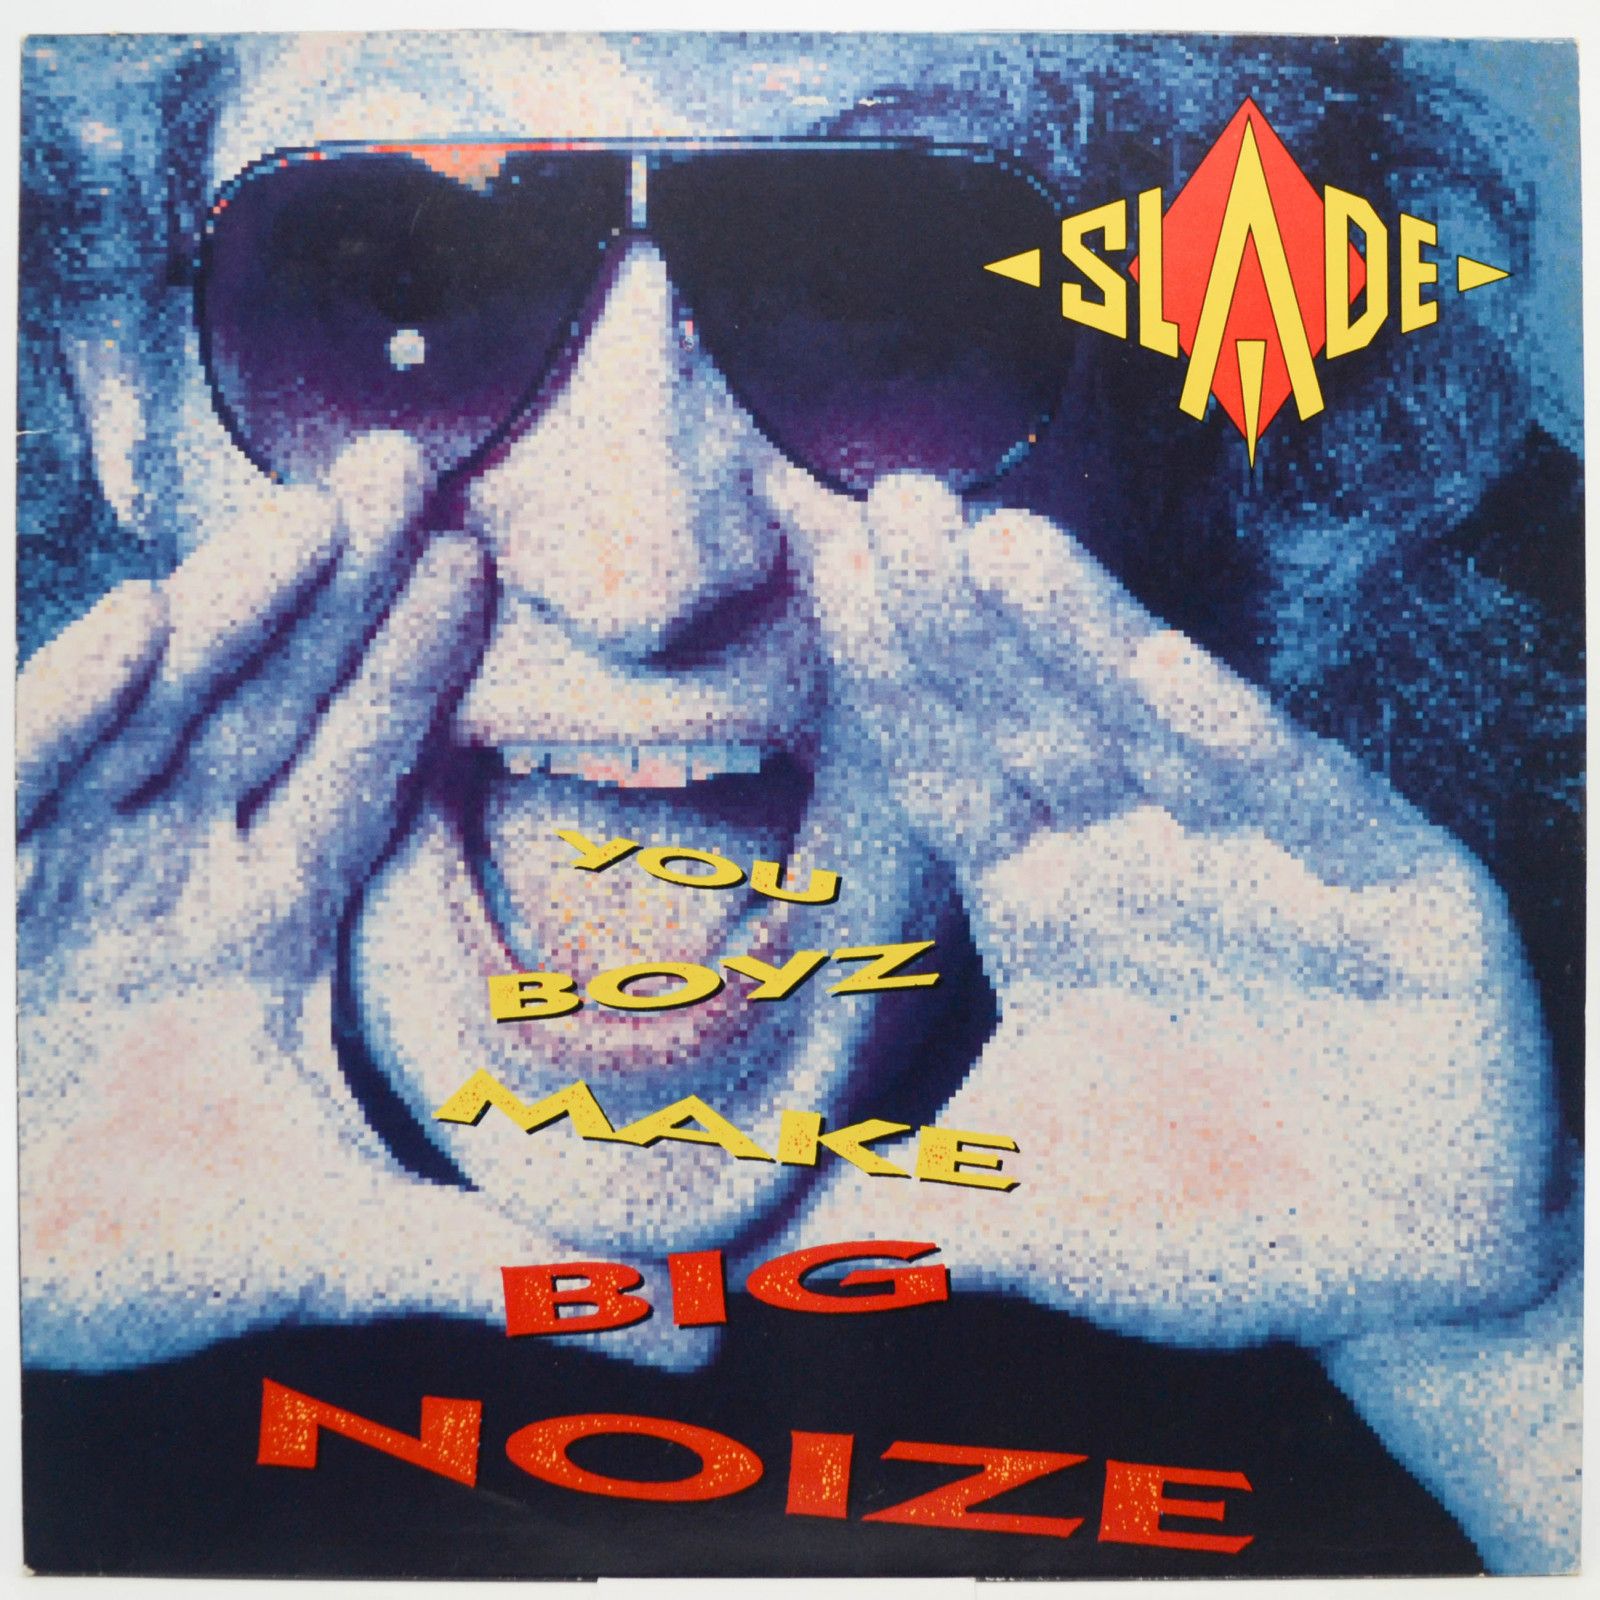 Slade — You Boyz Make Big Noize, 1987